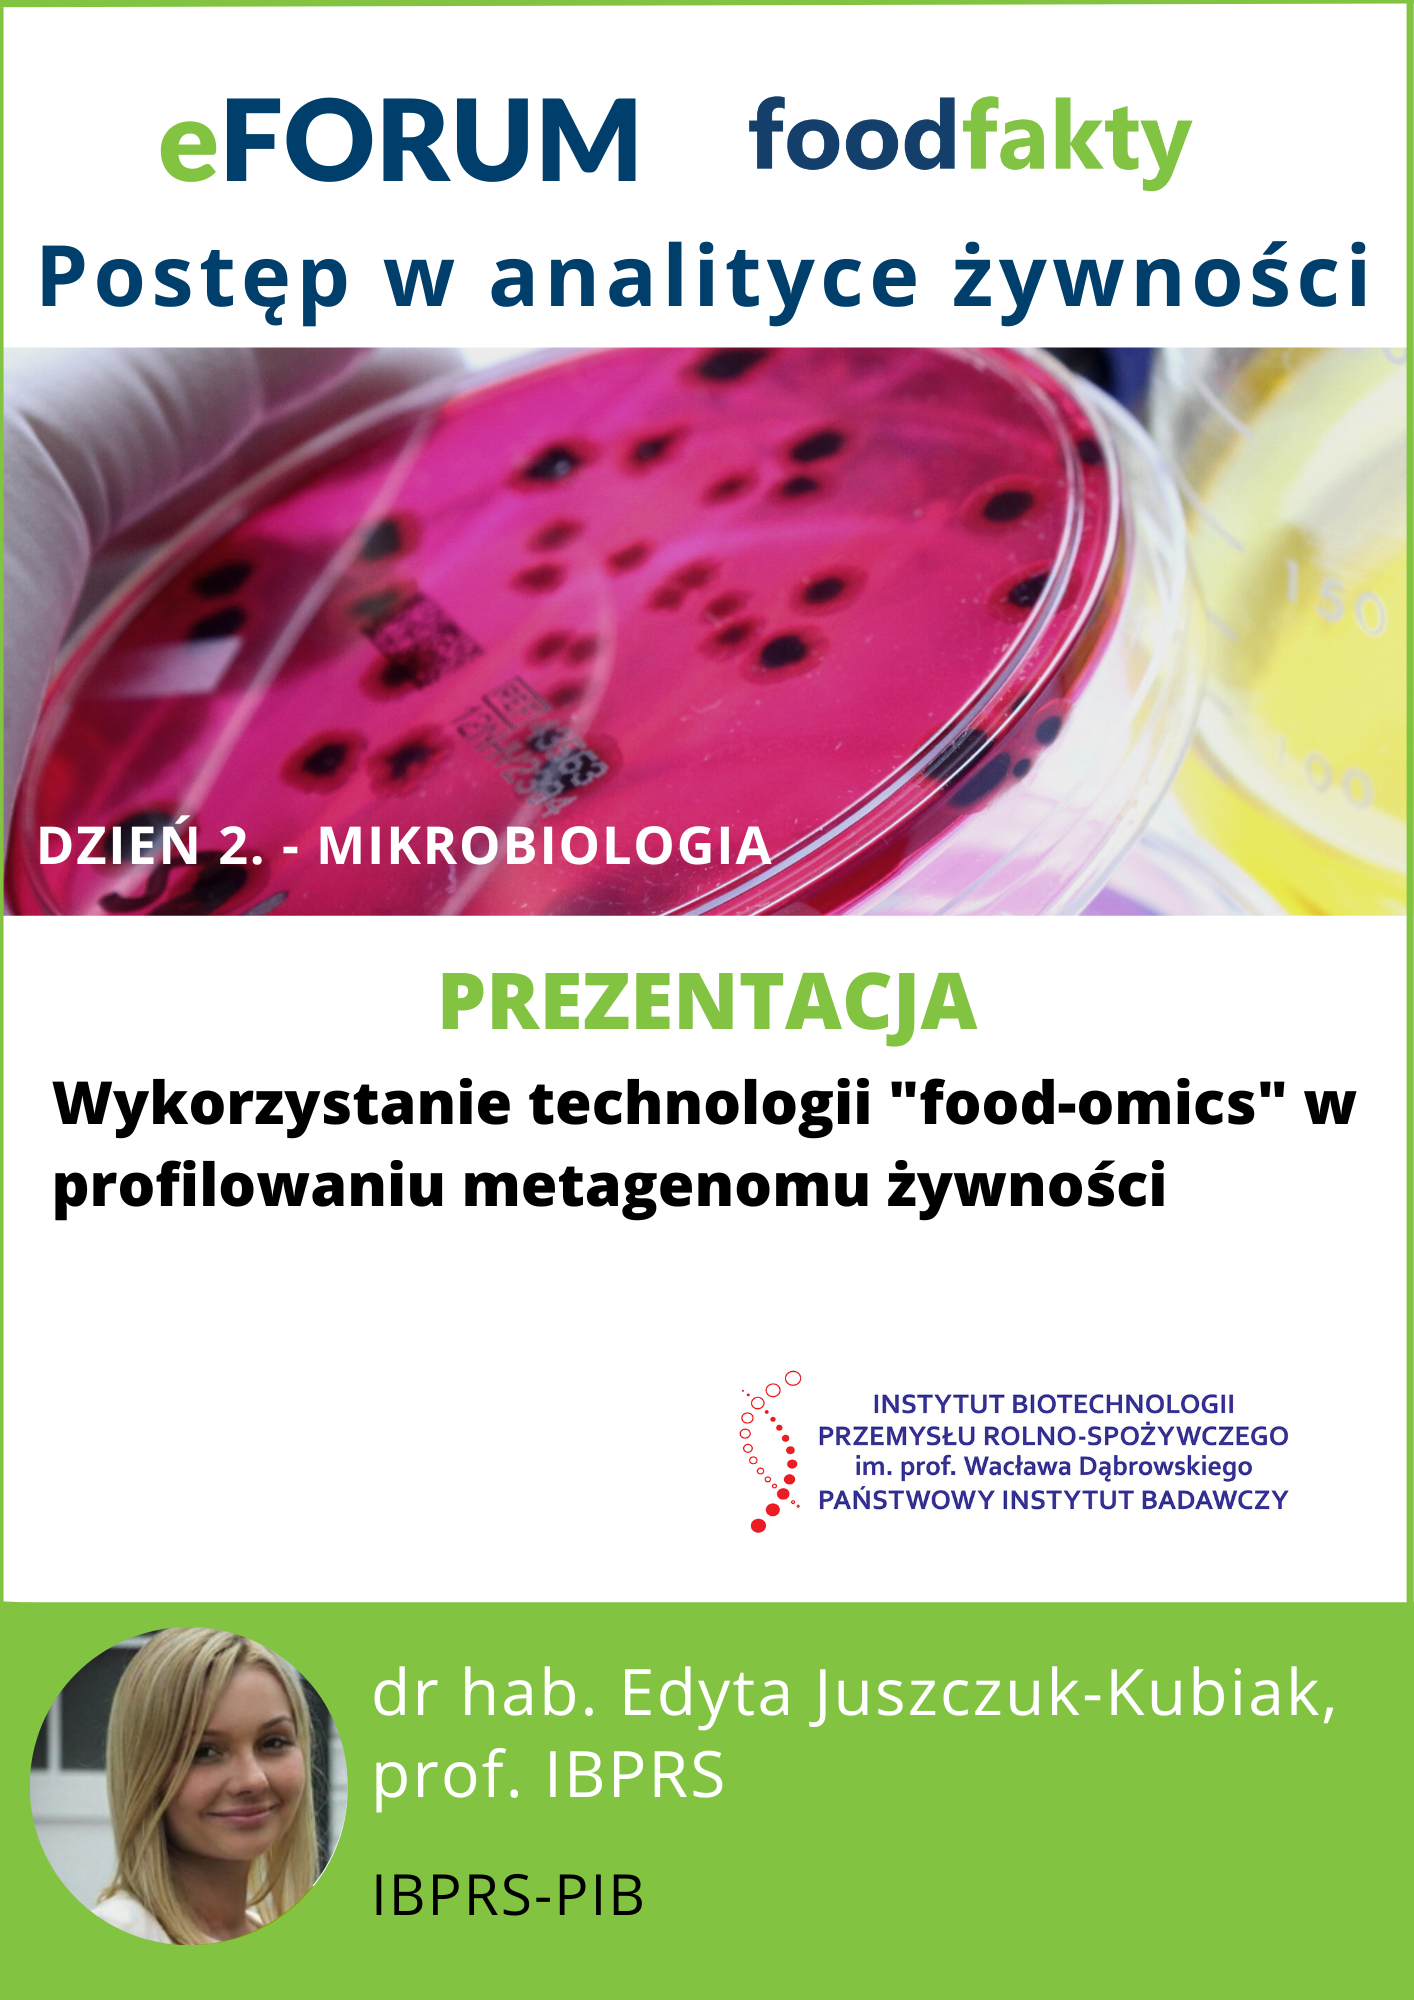 eFORUM Postęp w analityce żywności. Dzień 2. - Mikrobiologia - IBPRS-PIB